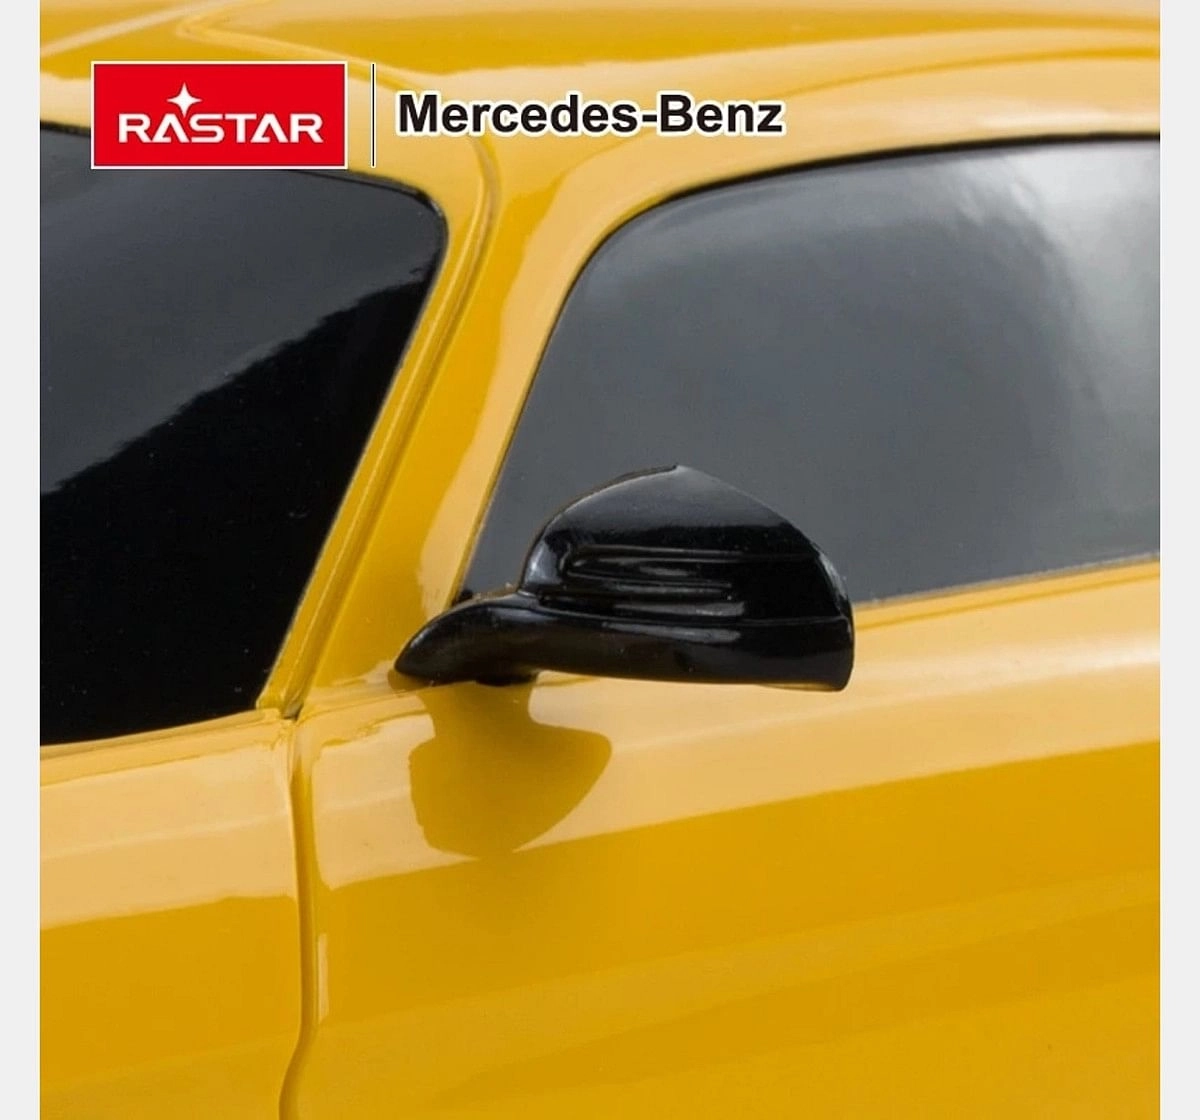 Rastar 1:24 Mercedes Benz G63 Remote Control Car, 2Y+ (Multicolor)